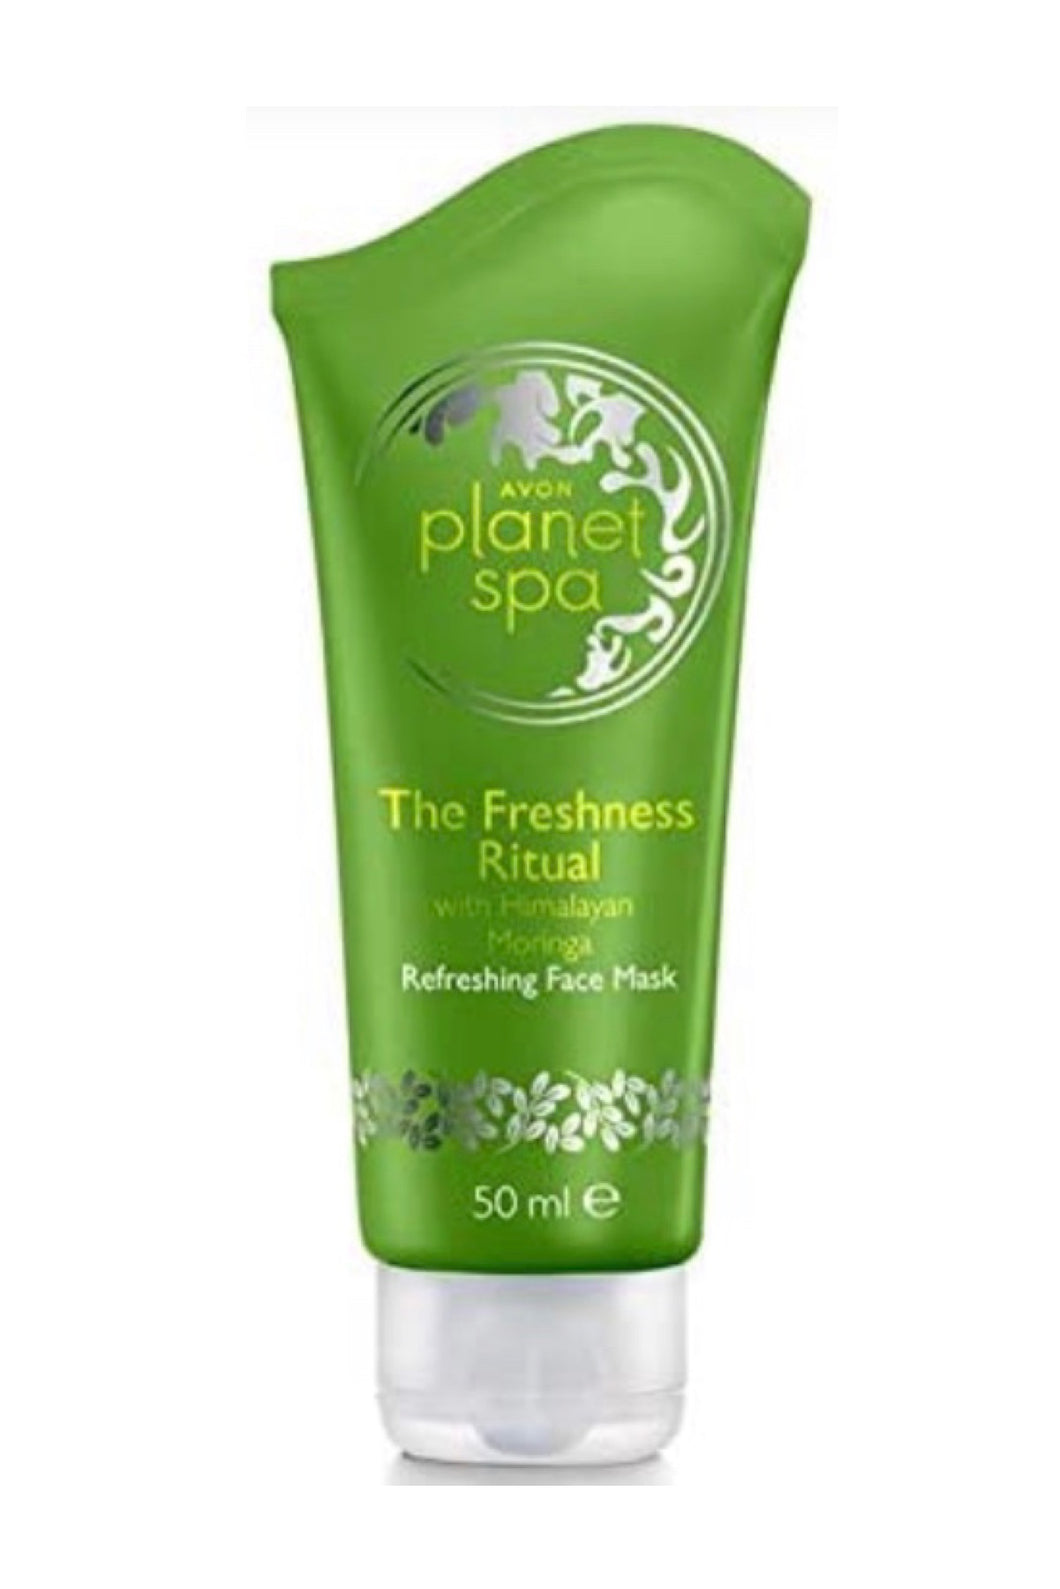 Planet Spa The Freshness Ritual Refreshing Face Mask with Himalayan Moringa 50ml